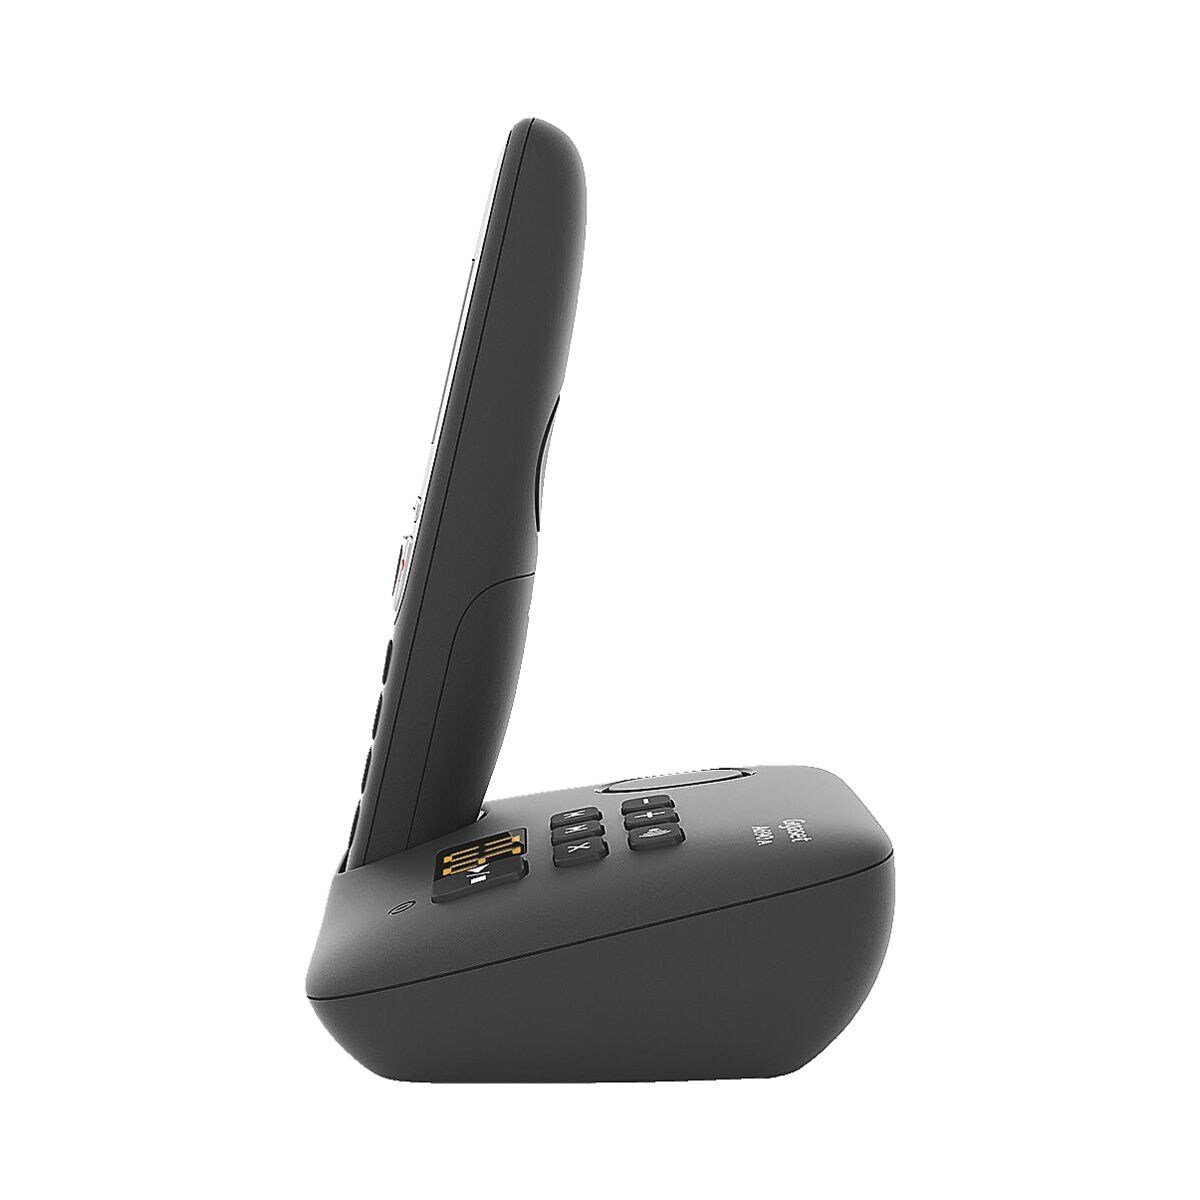 Gigaset A690A Schnurloses DECT-Telefon Anrufbeantworter) (mit schwarz integriertem